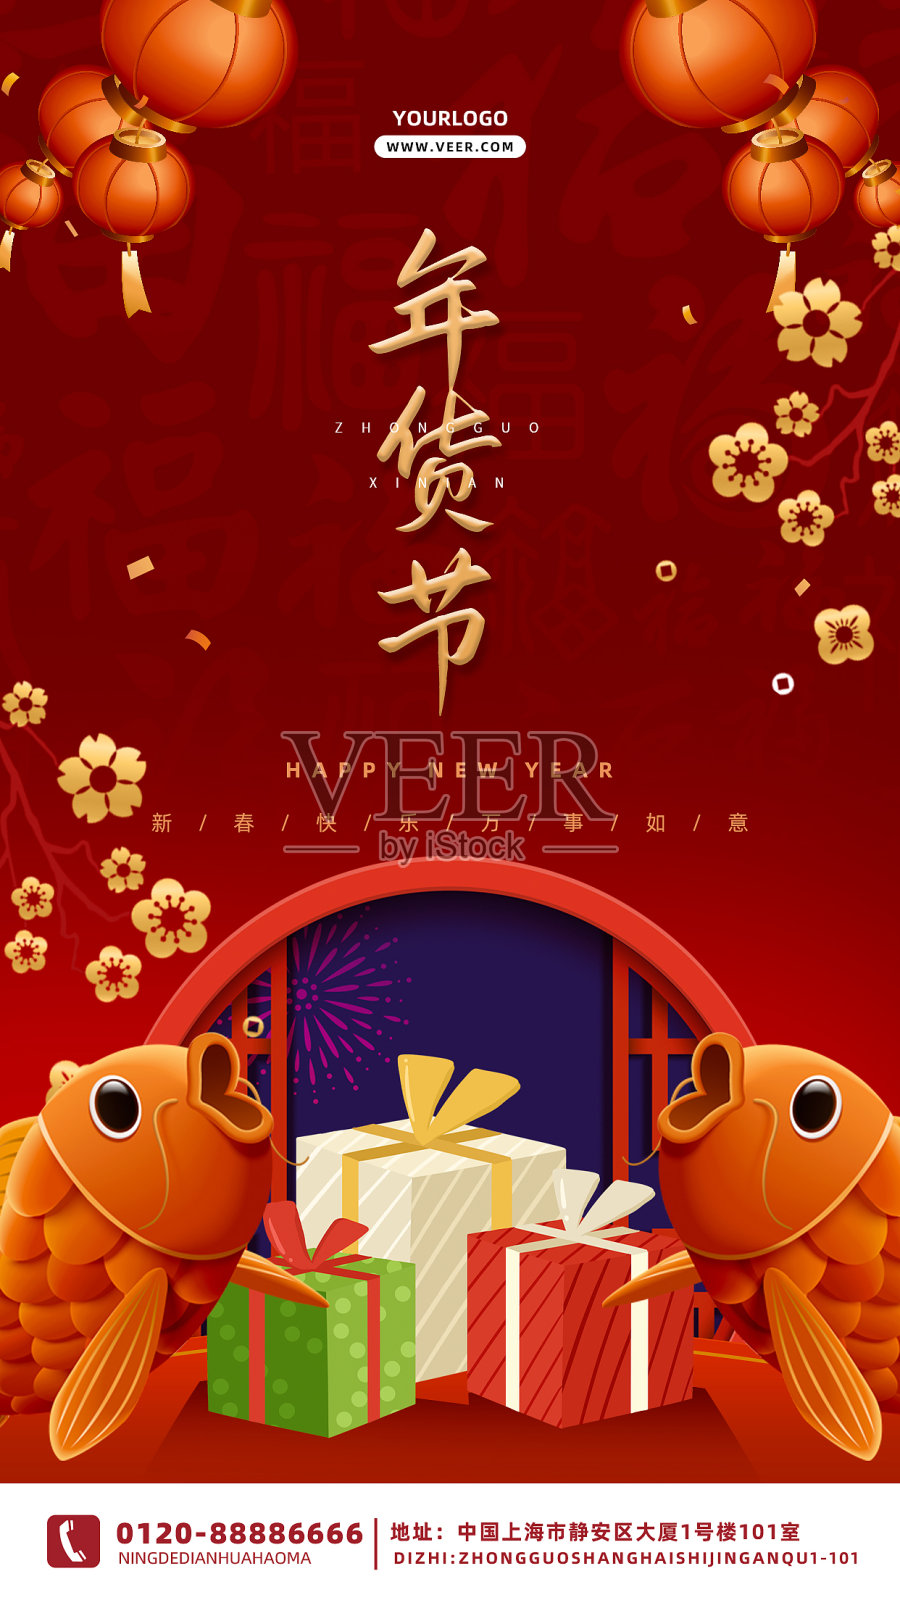 红色质感时尚大气喜庆年货节促销海报设计模板素材